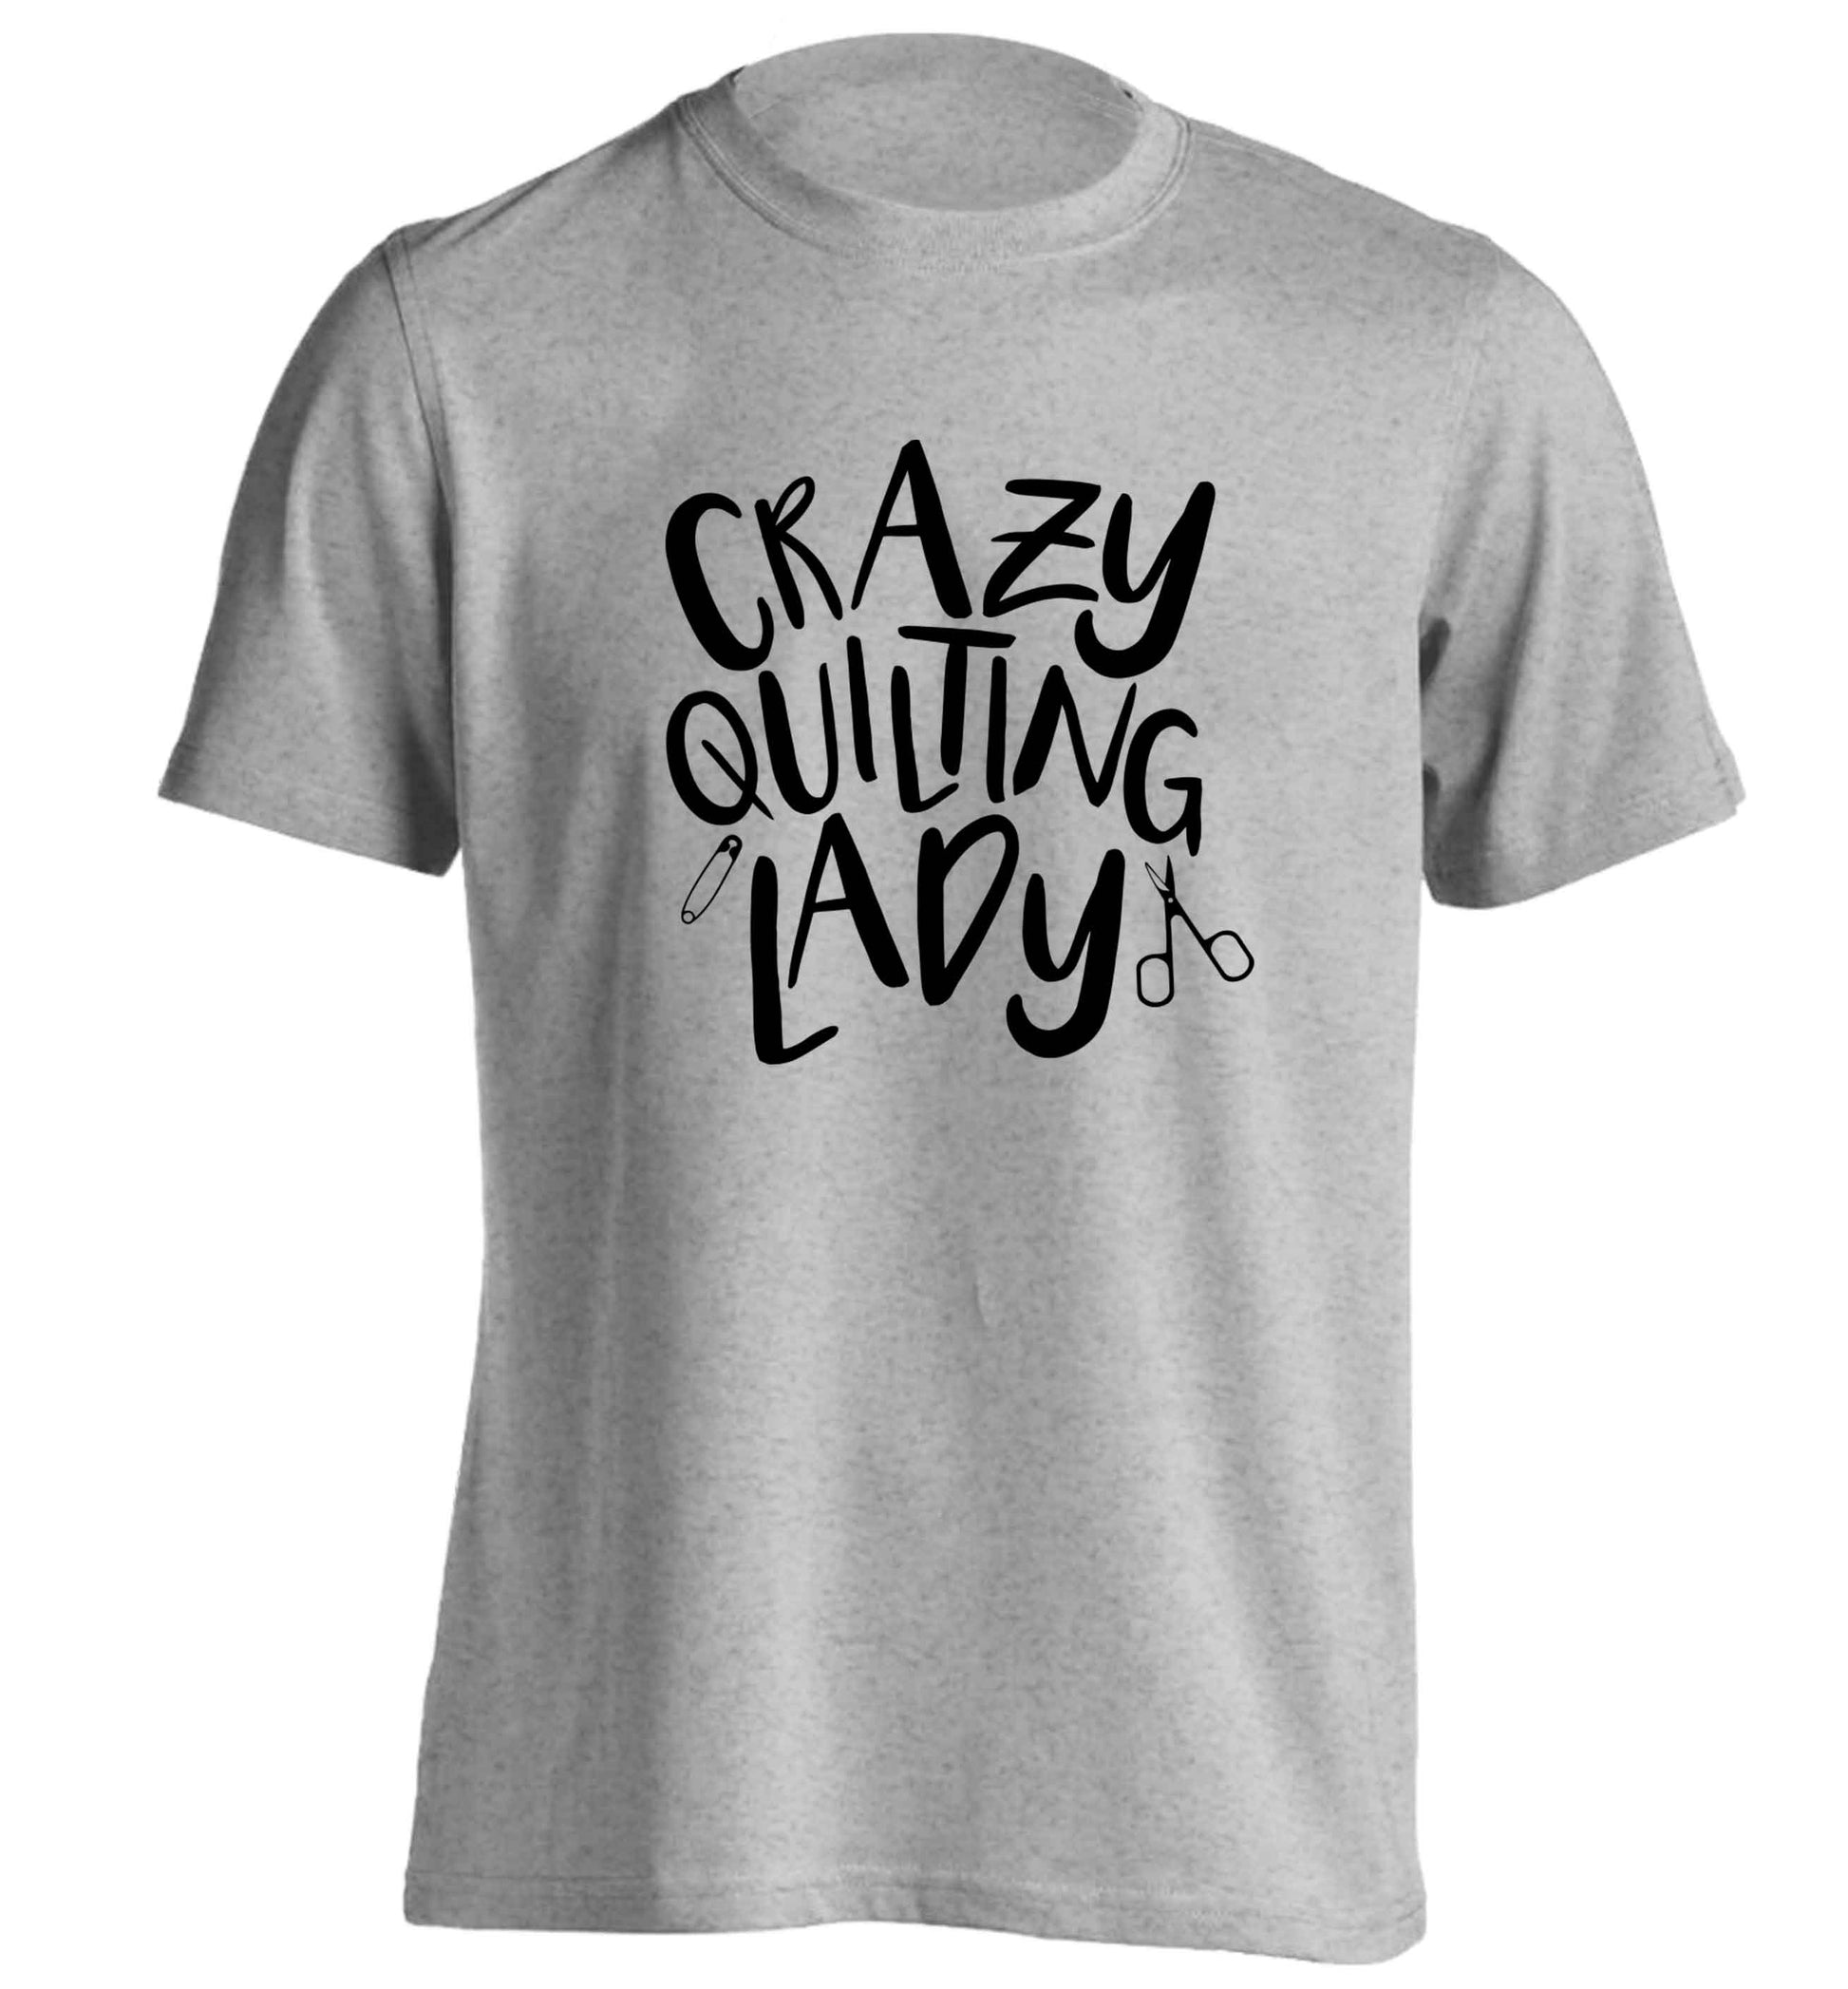 Crazy quilting lady adults unisex grey Tshirt 2XL